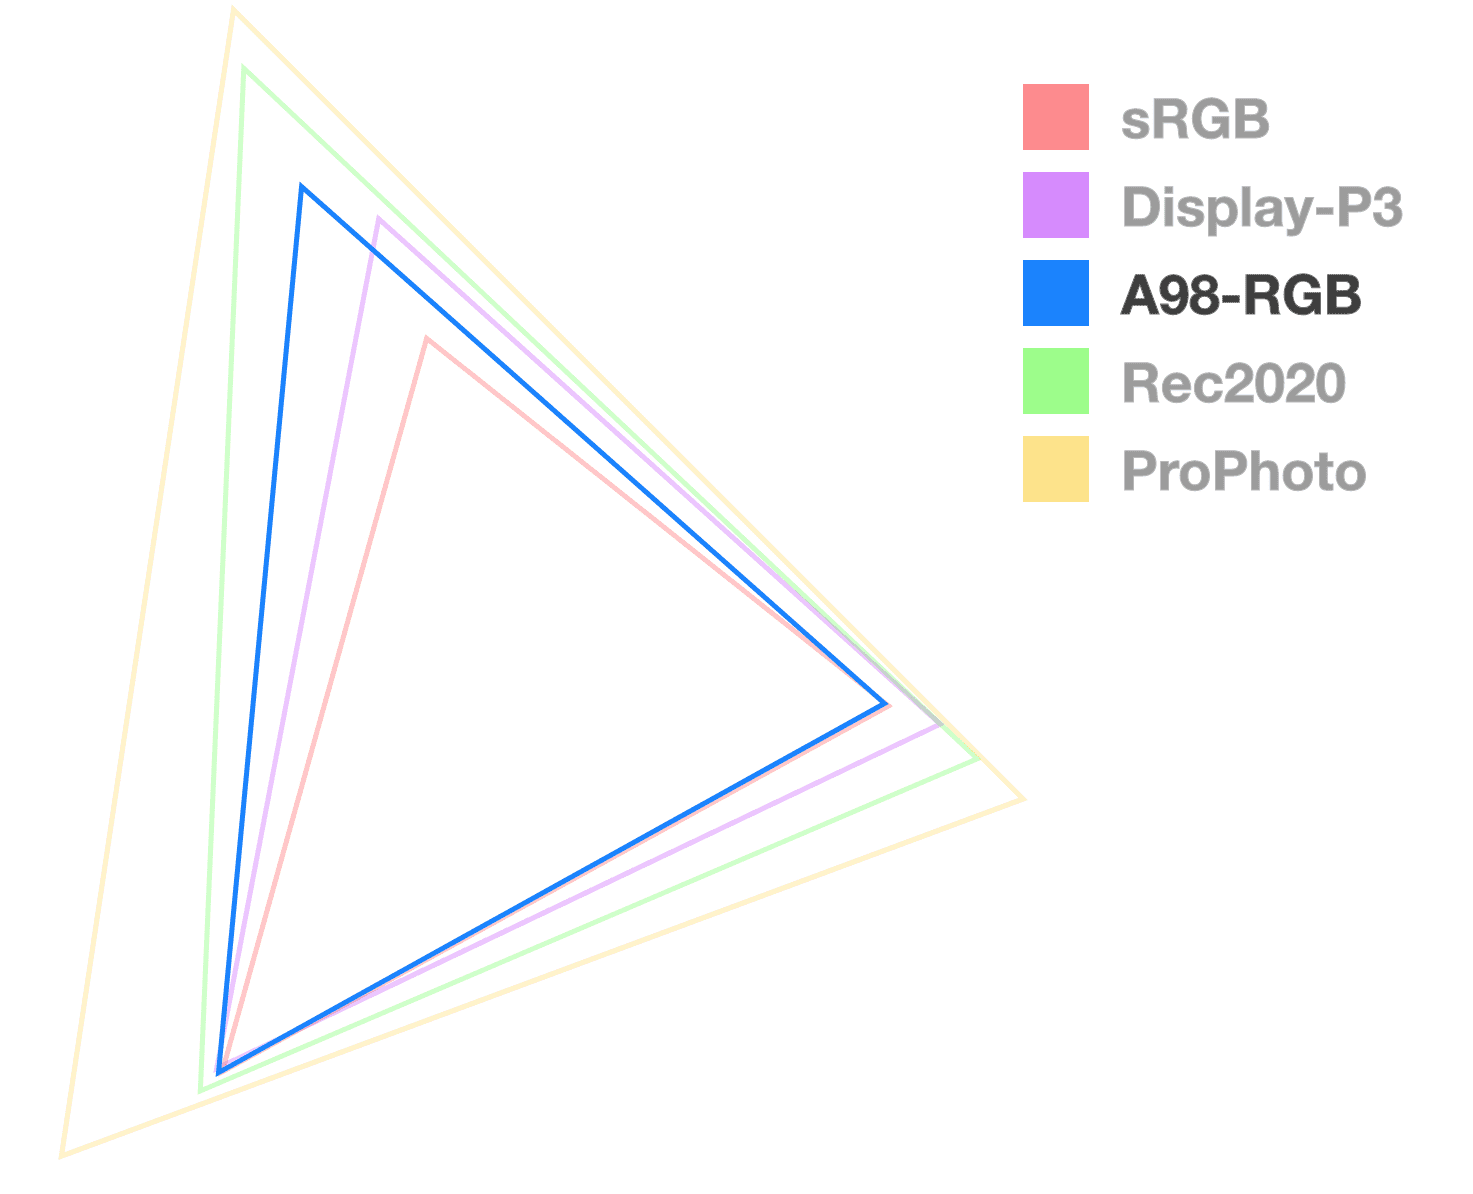 O triângulo A98 é o único totalmente opaco para ajudar a visualizar o tamanho da gama. Parece o triângulo com tamanhos do meio.